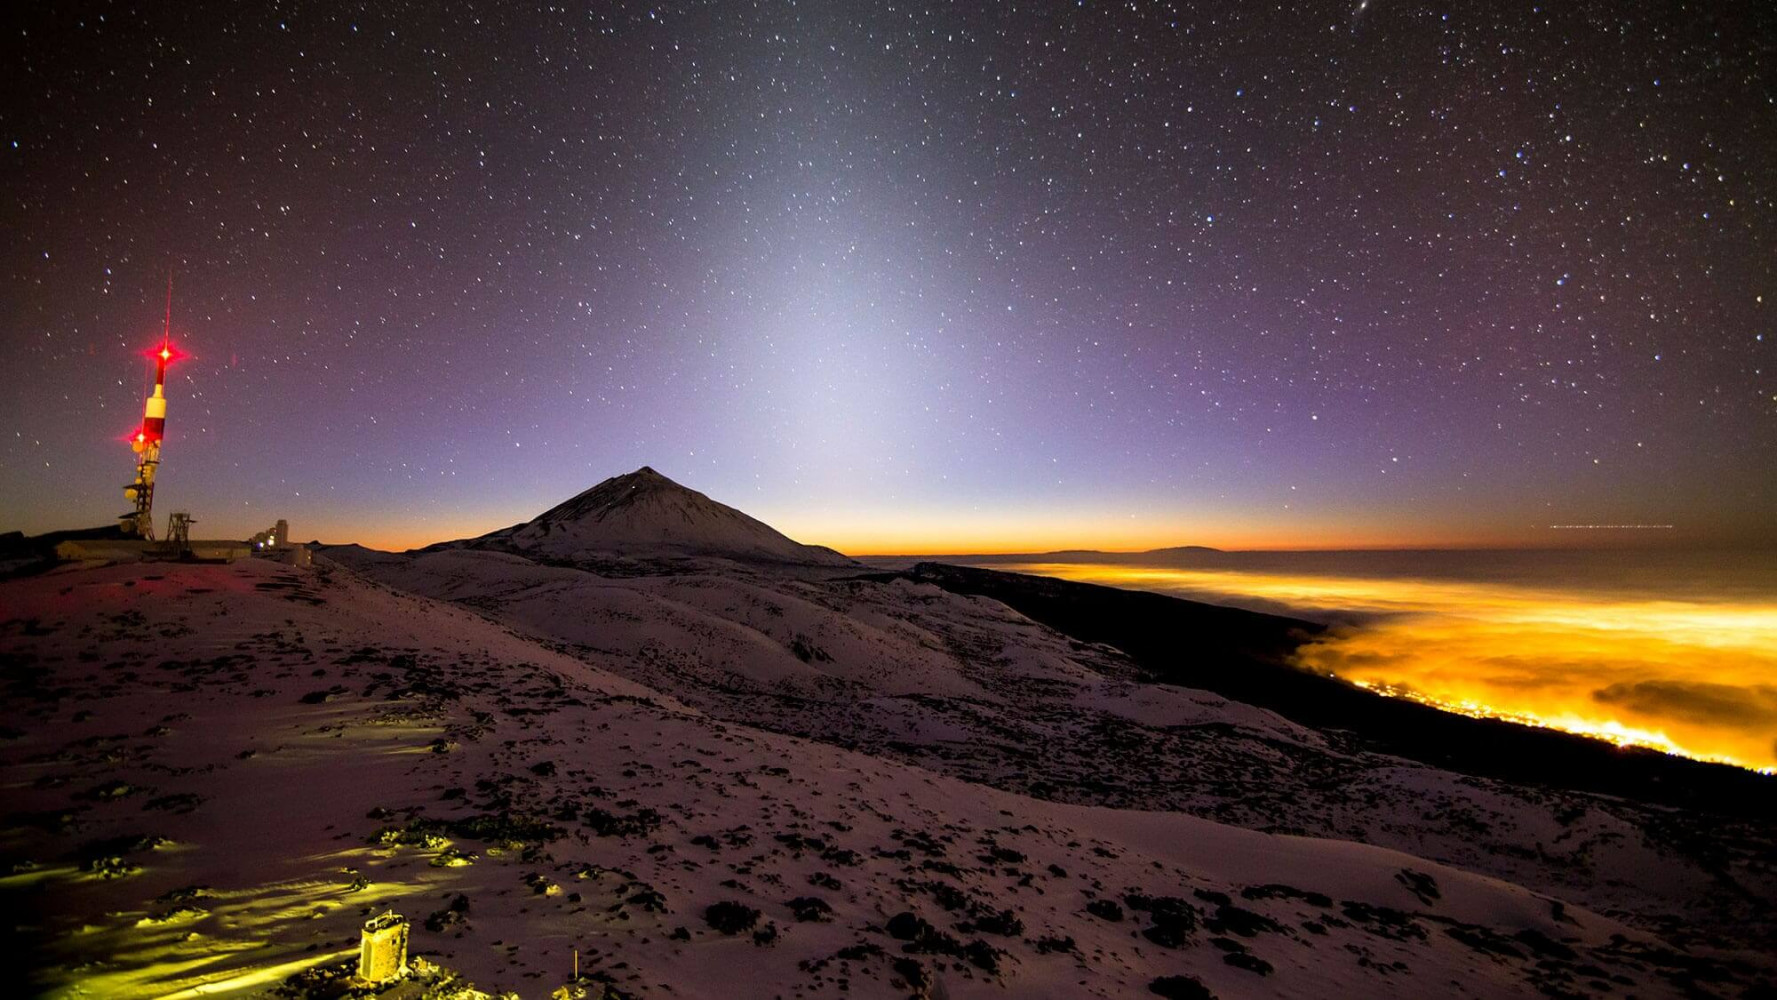 The starry sky of Teide